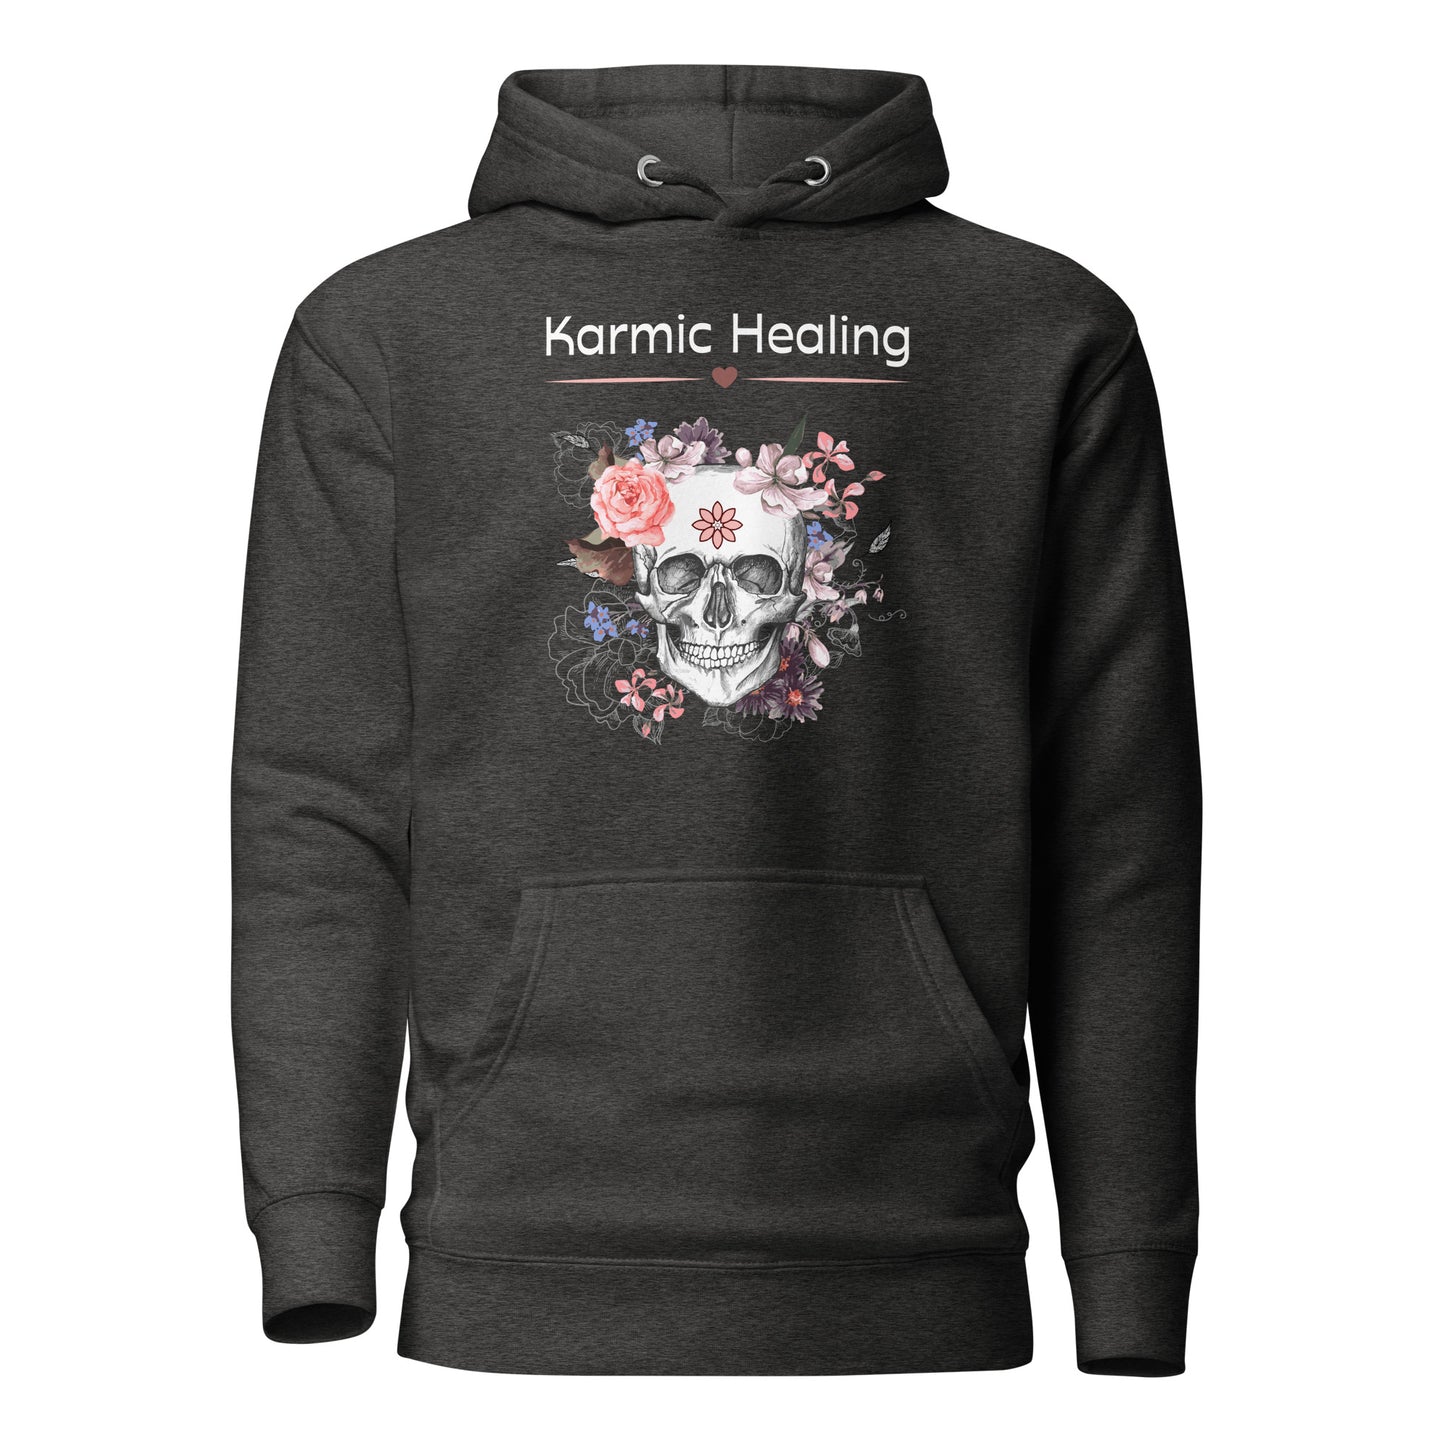 Karmic Healing - Unisex Hoodie